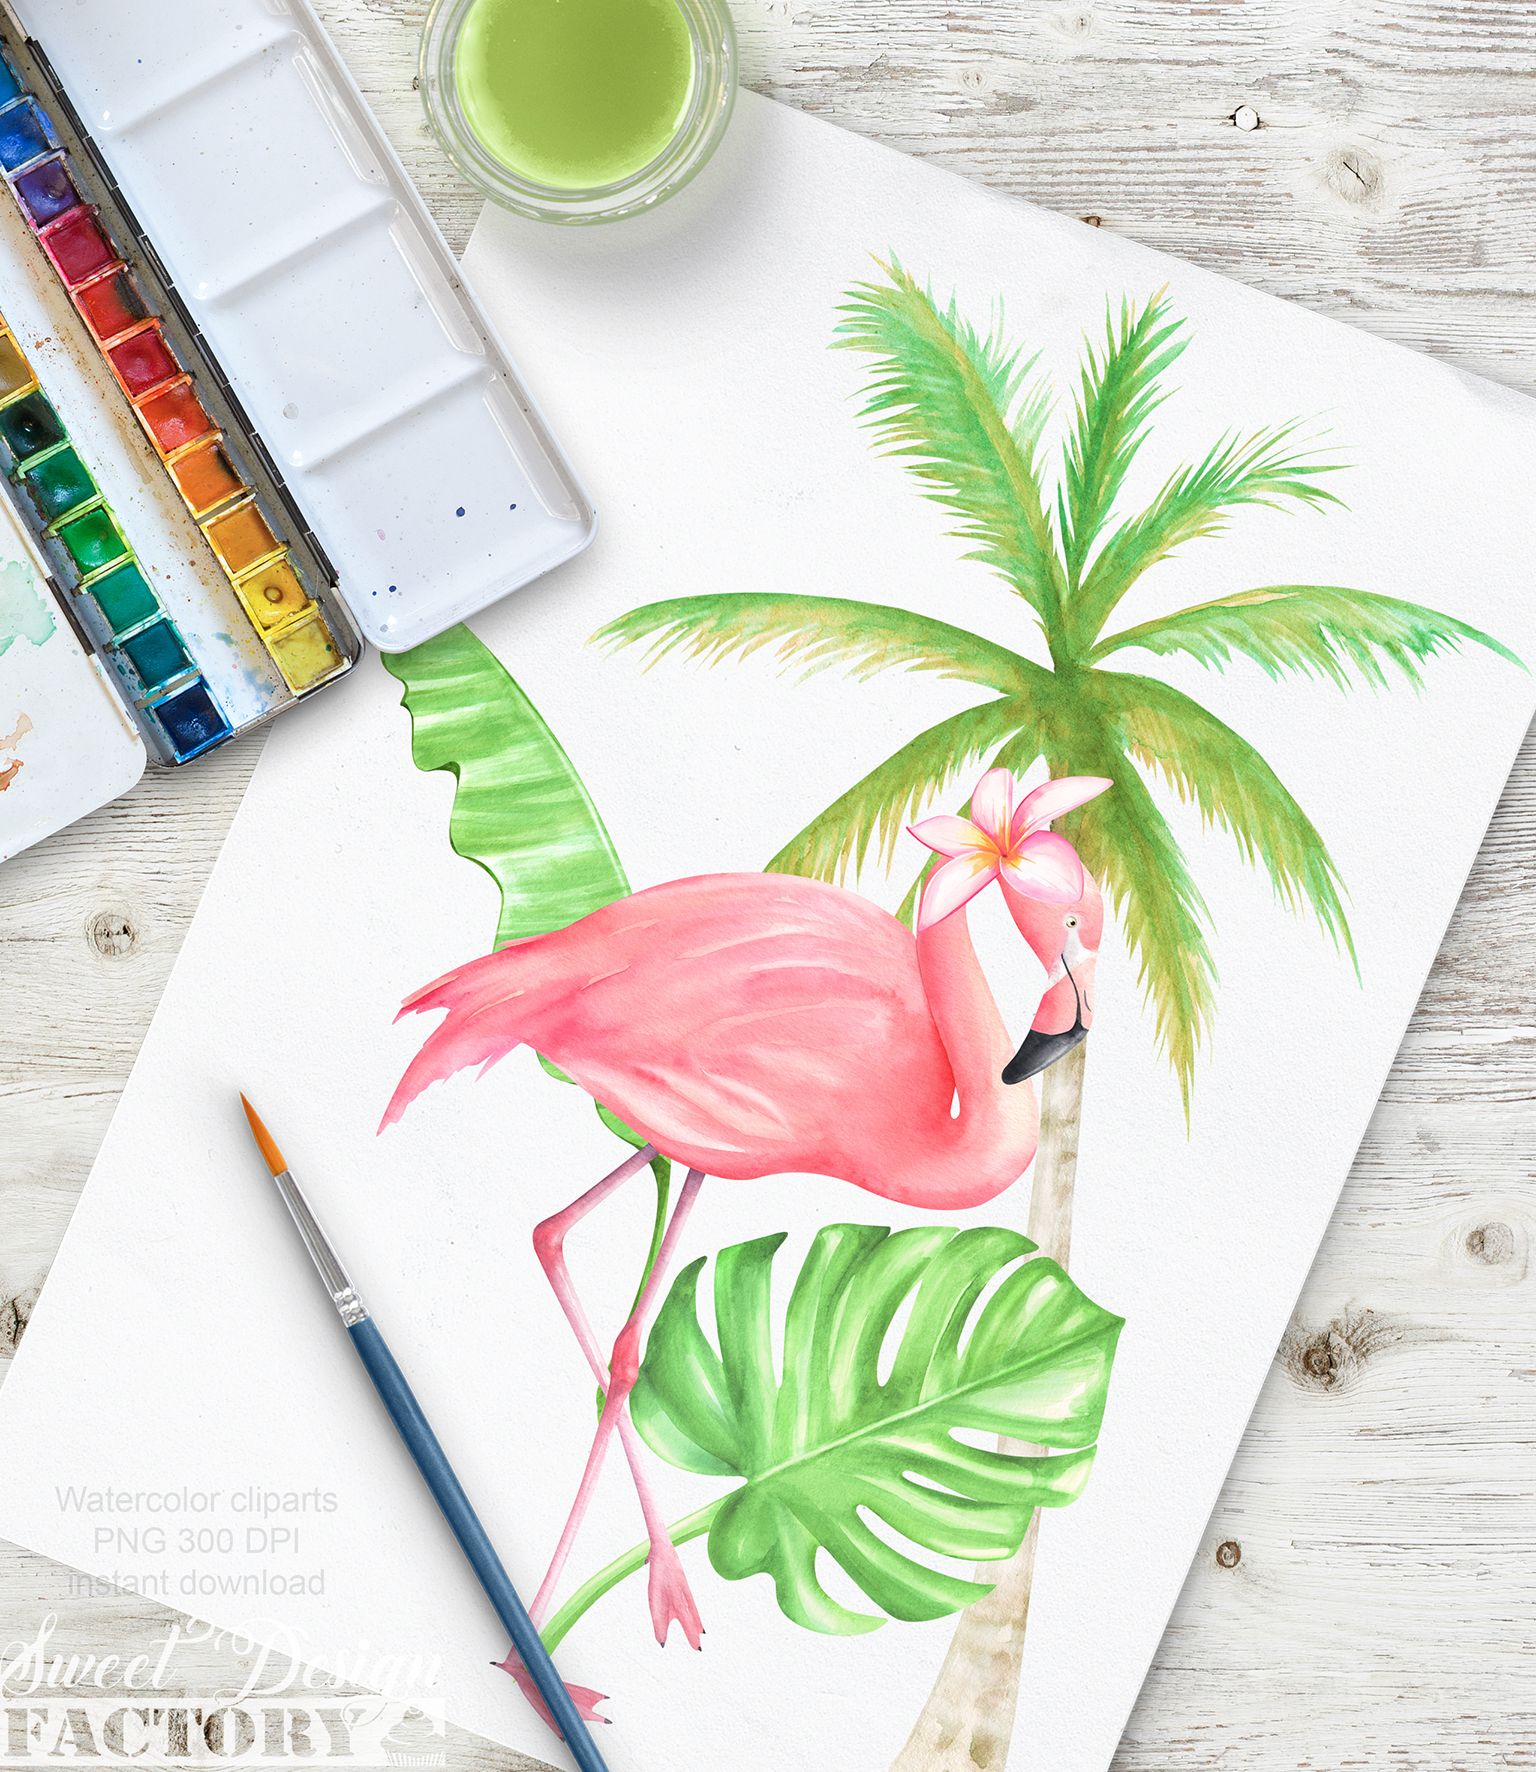 Summer clipart, flamingo clipart, beach clipart, palm tree